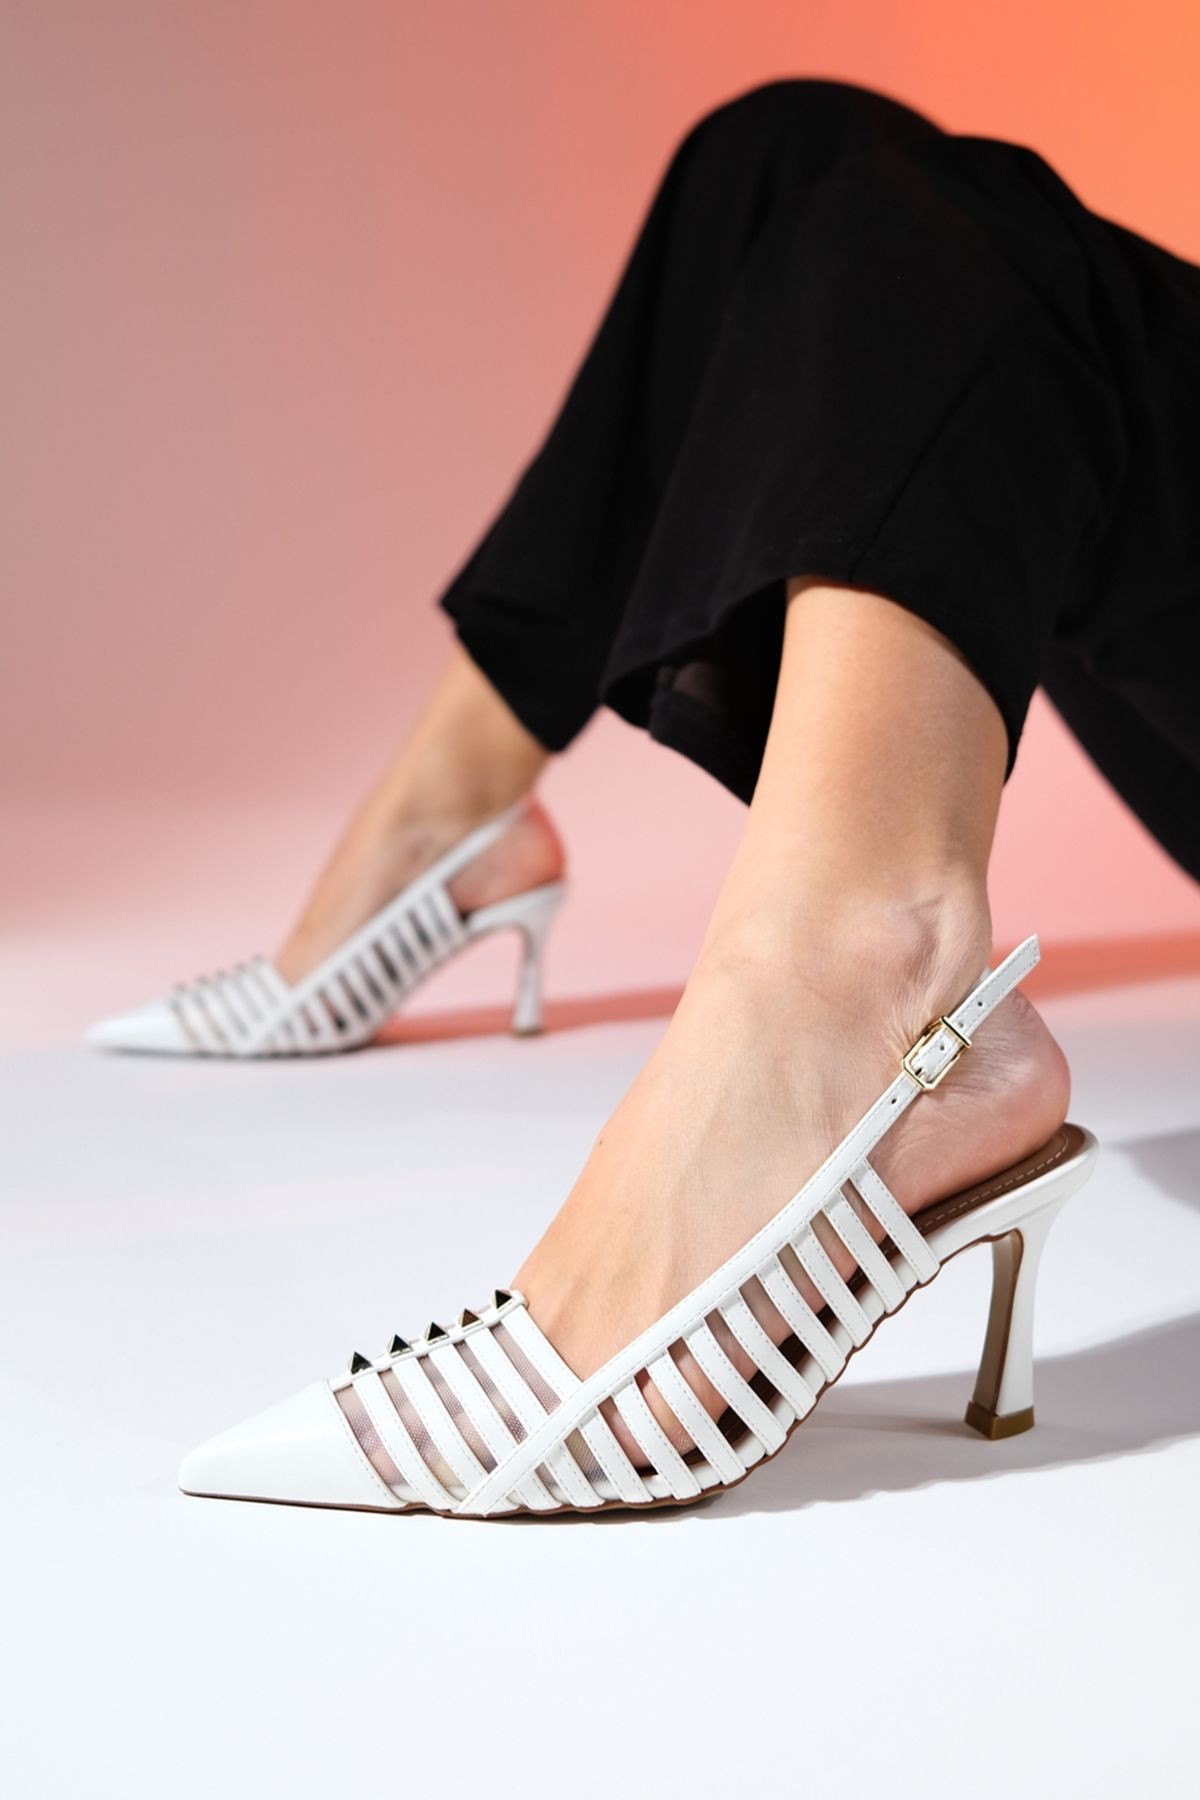 luvishoes RENNES Beyaz Troklu Kadın Sivri Burun Bantlı İnce Topuklu Ayakkabı